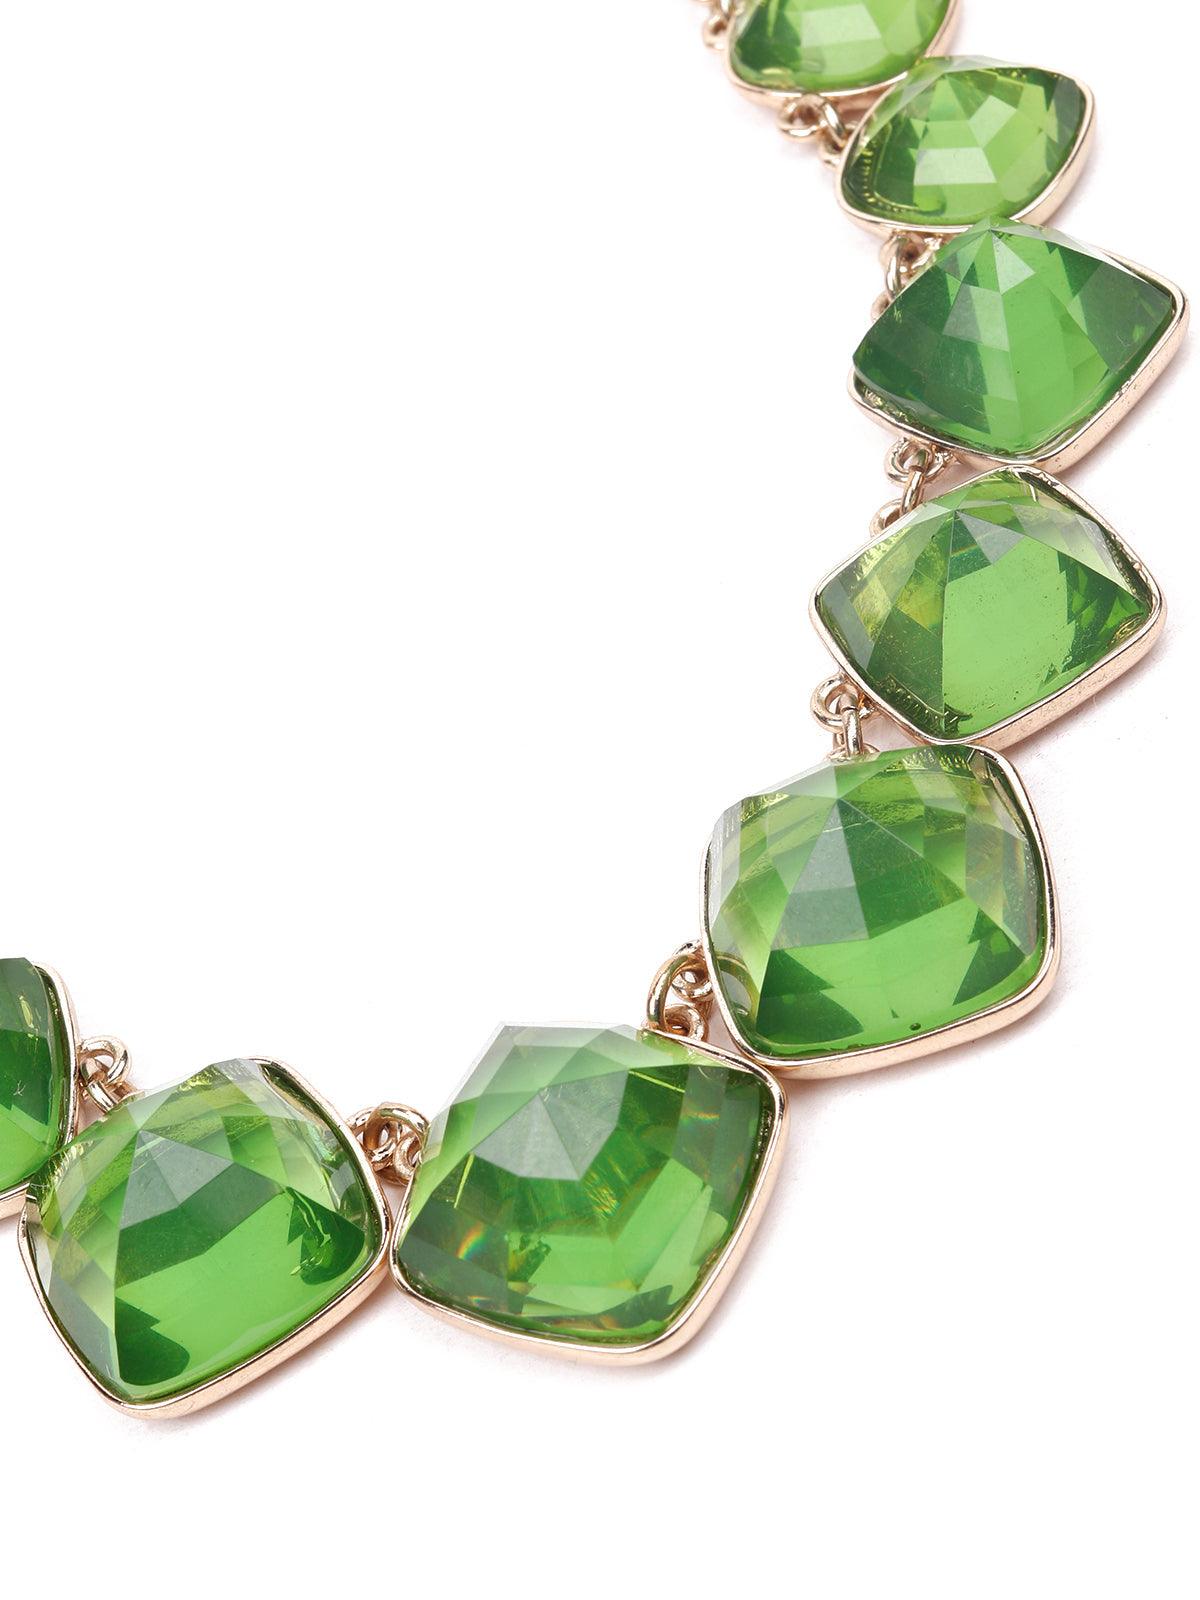 Women's Leaf Textured Statement Necklace-Green - Odette